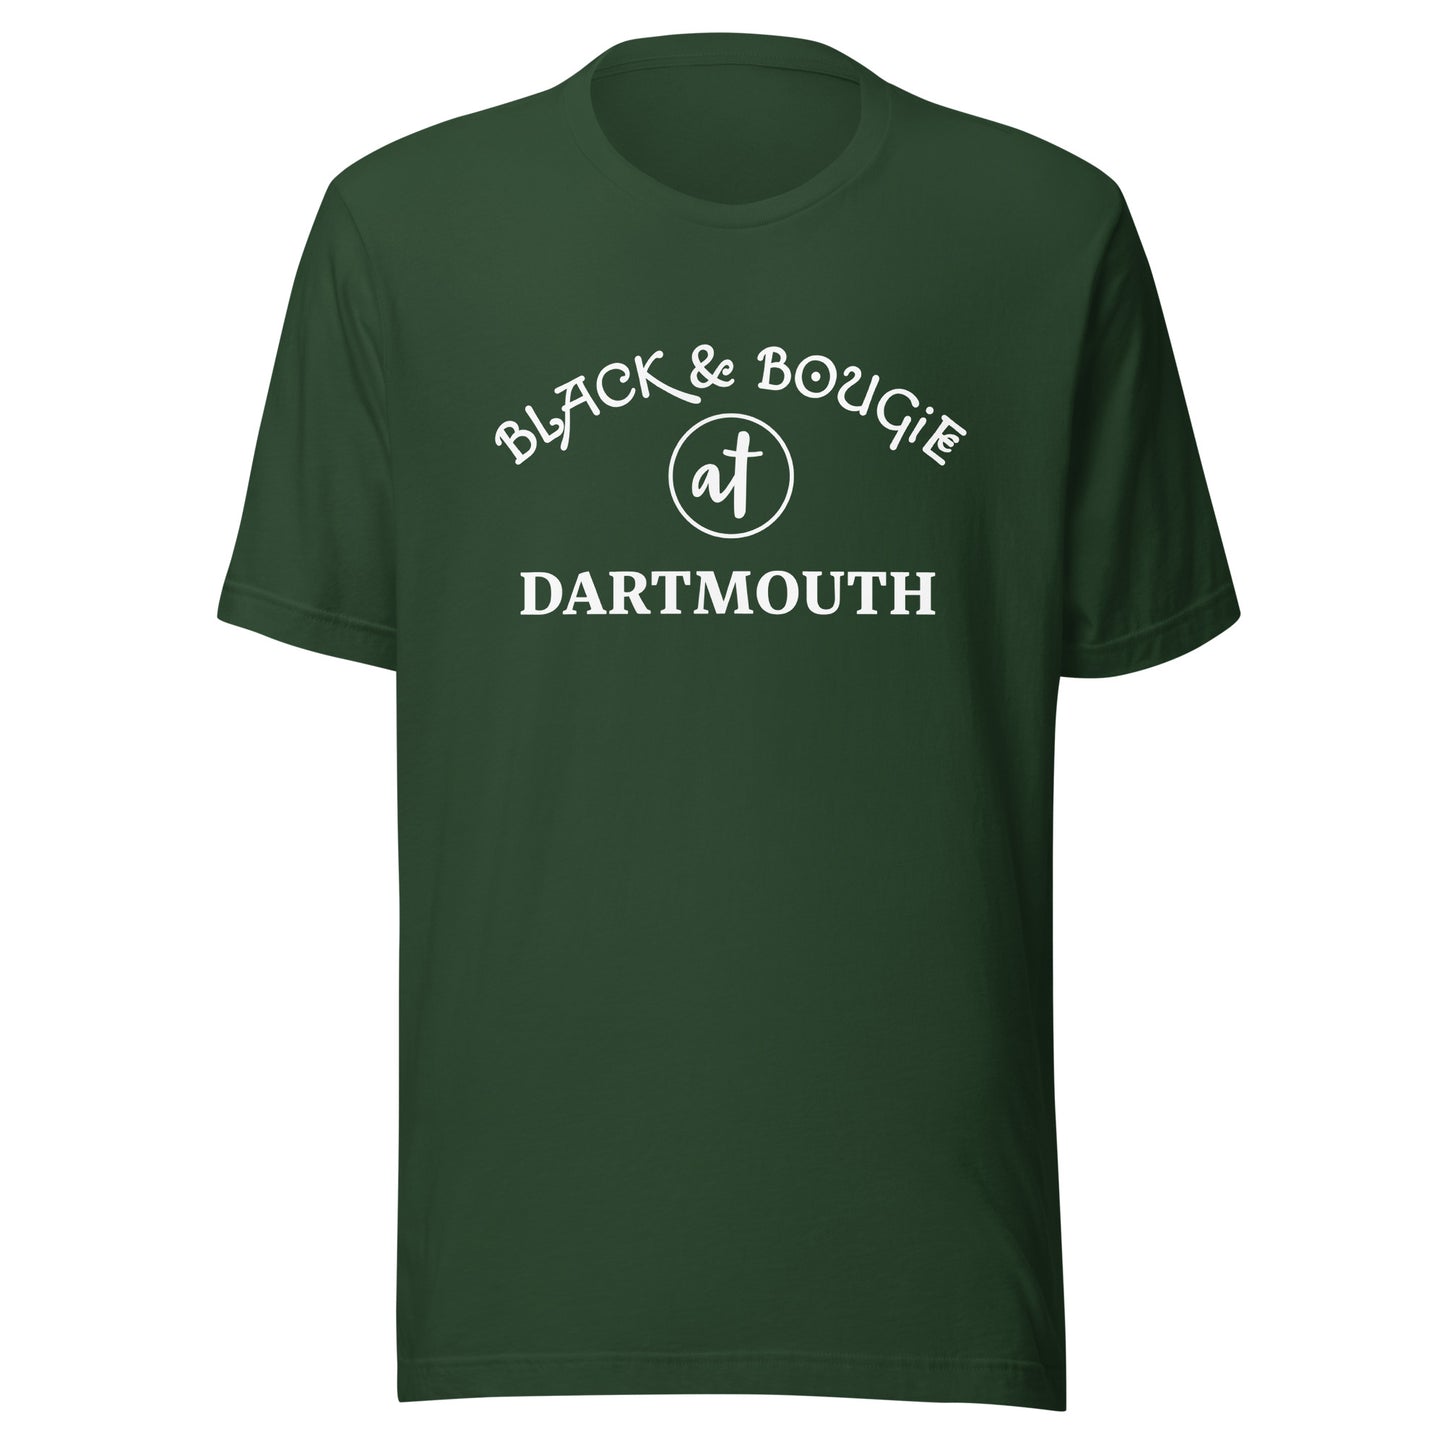 B & B at Dartmouth - Green t-shirt